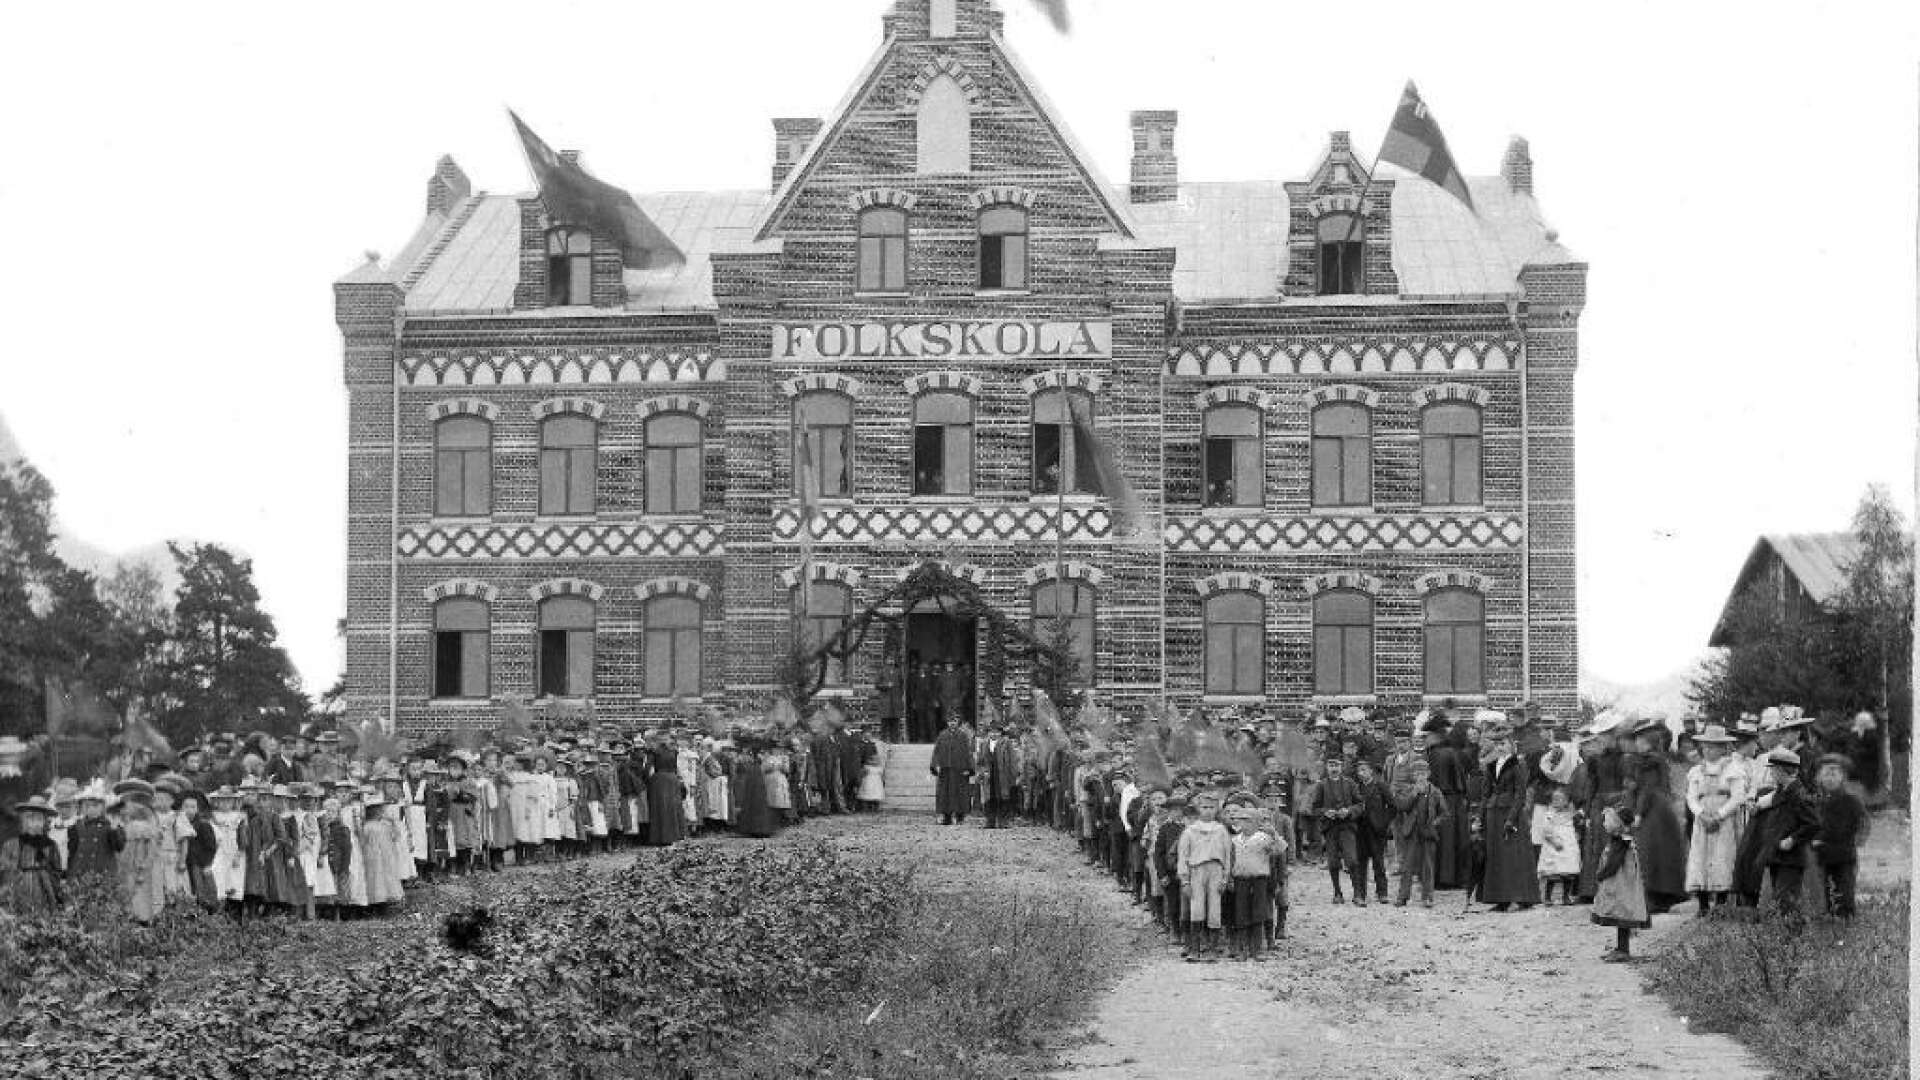 Det var högtidligt när nya folkskolehuset invigdes 1899. Unionsflaggorna var hissade och fotograf Ludvig Åberg arrangerade bilden på elever, lärare och andra inbjudna. En monumental byggnad som skulle stå i två århundraden sade invigningstalaren.